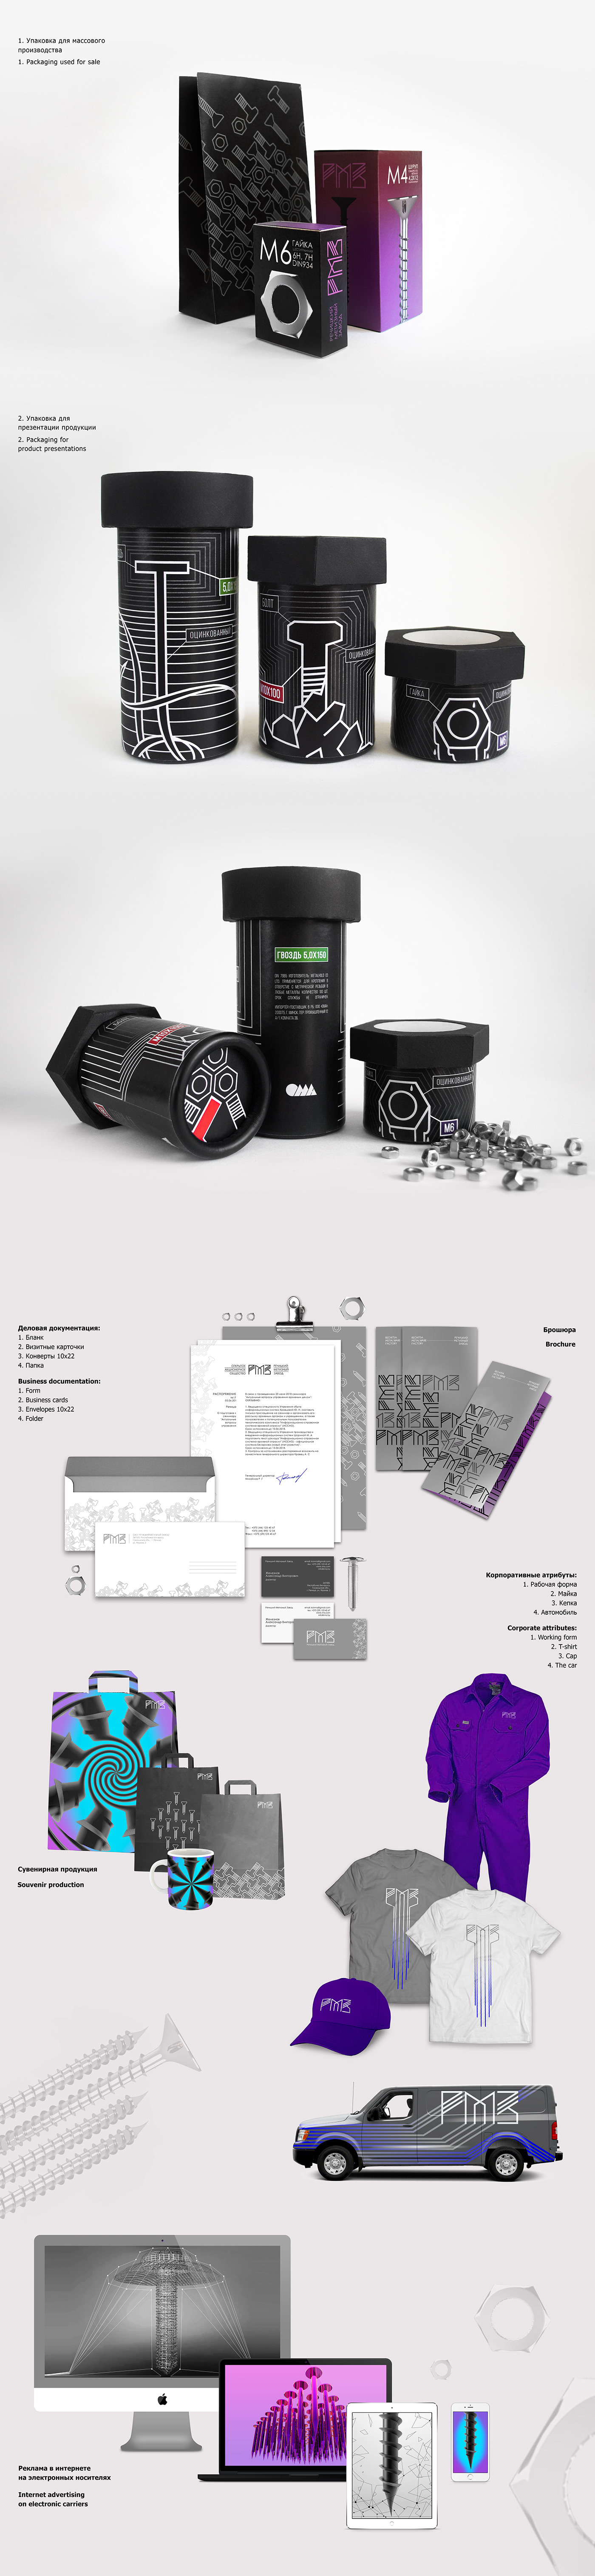 графический дизайн фирменный стиль упаковка логотип 3D technologies реклама graphic design  logo Packaging